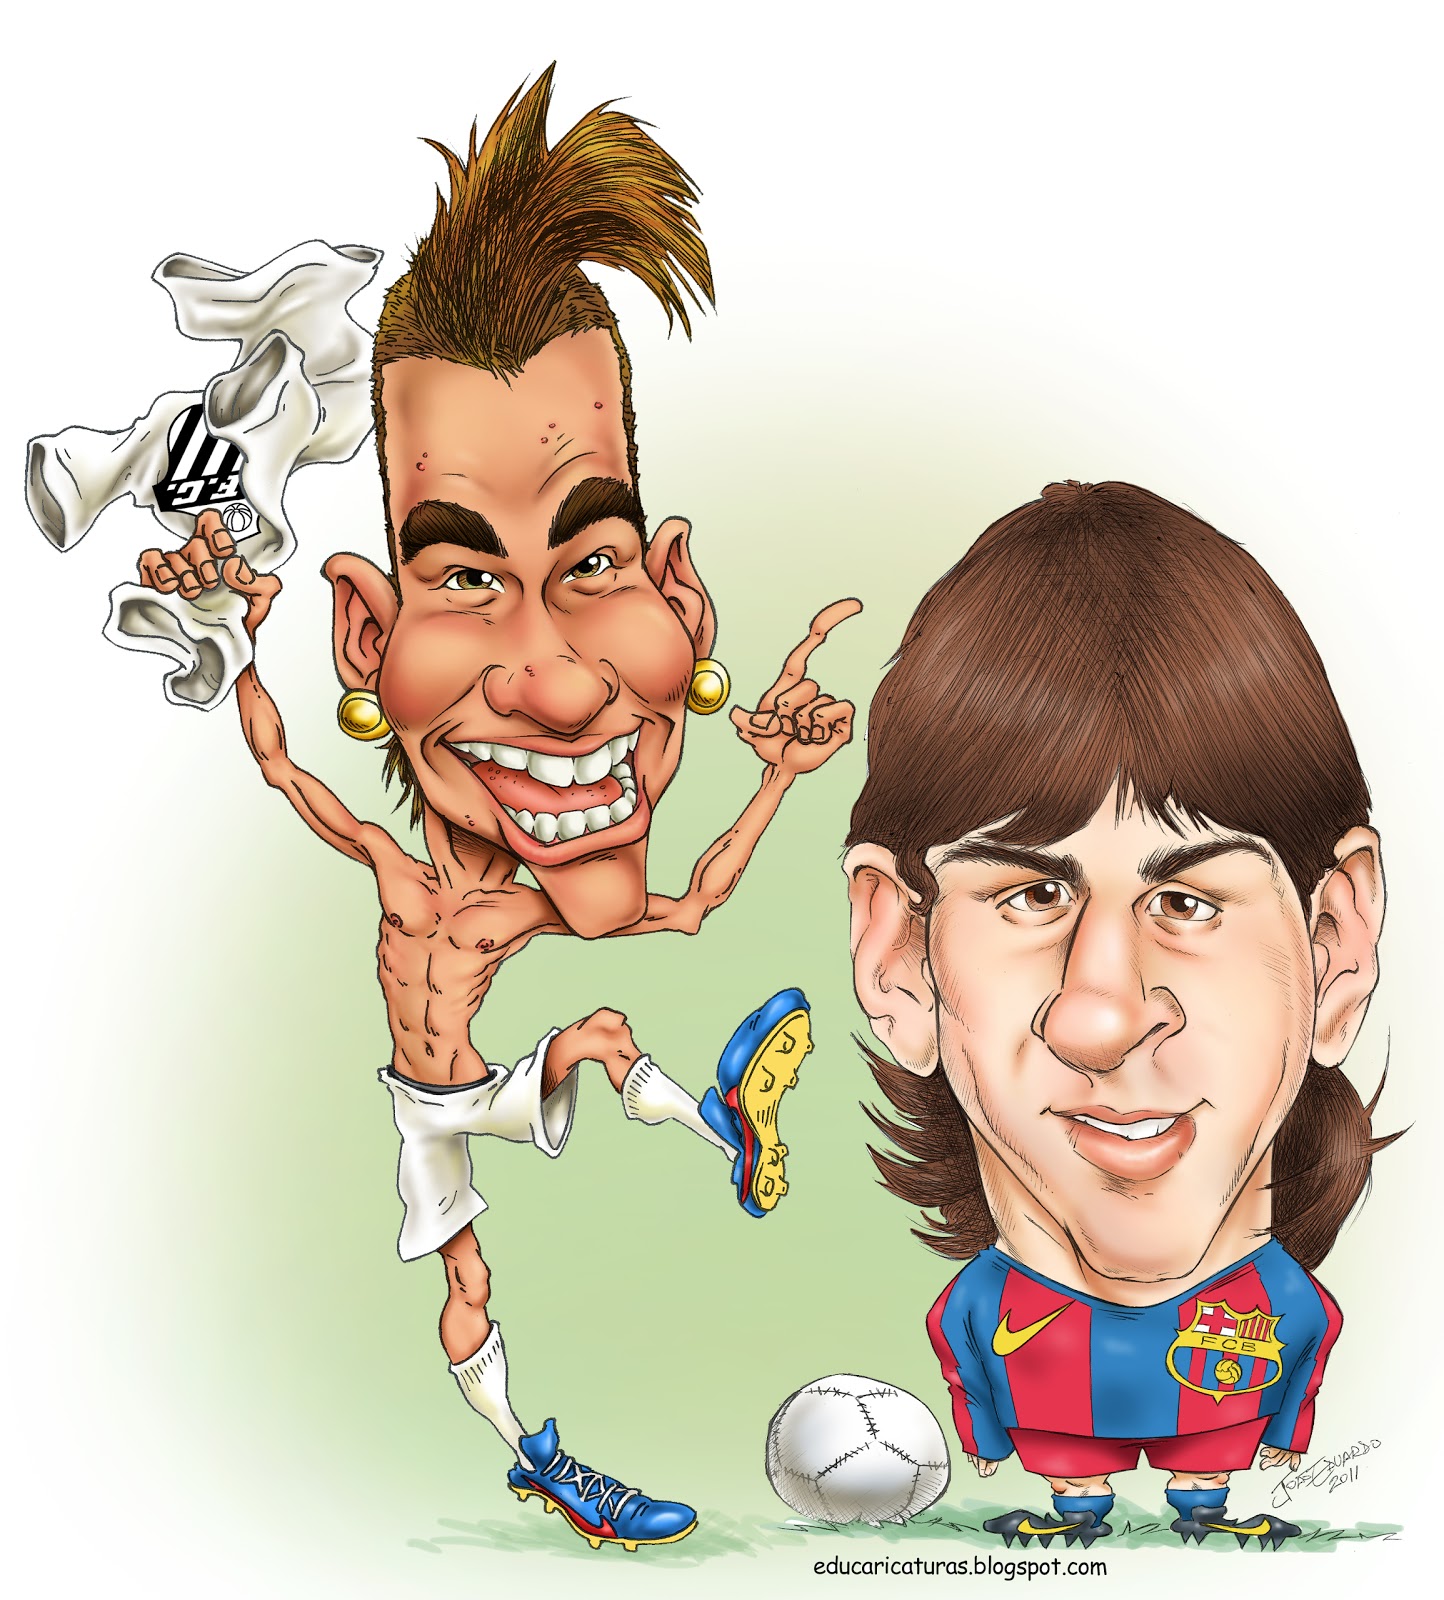 http://1.bp.blogspot.com/-XAmp8iJepuU/TgN40jrfJuI/AAAAAAAABGo/AIzZ-g07gd8/s1600/Neymar+X+Messi.jpg